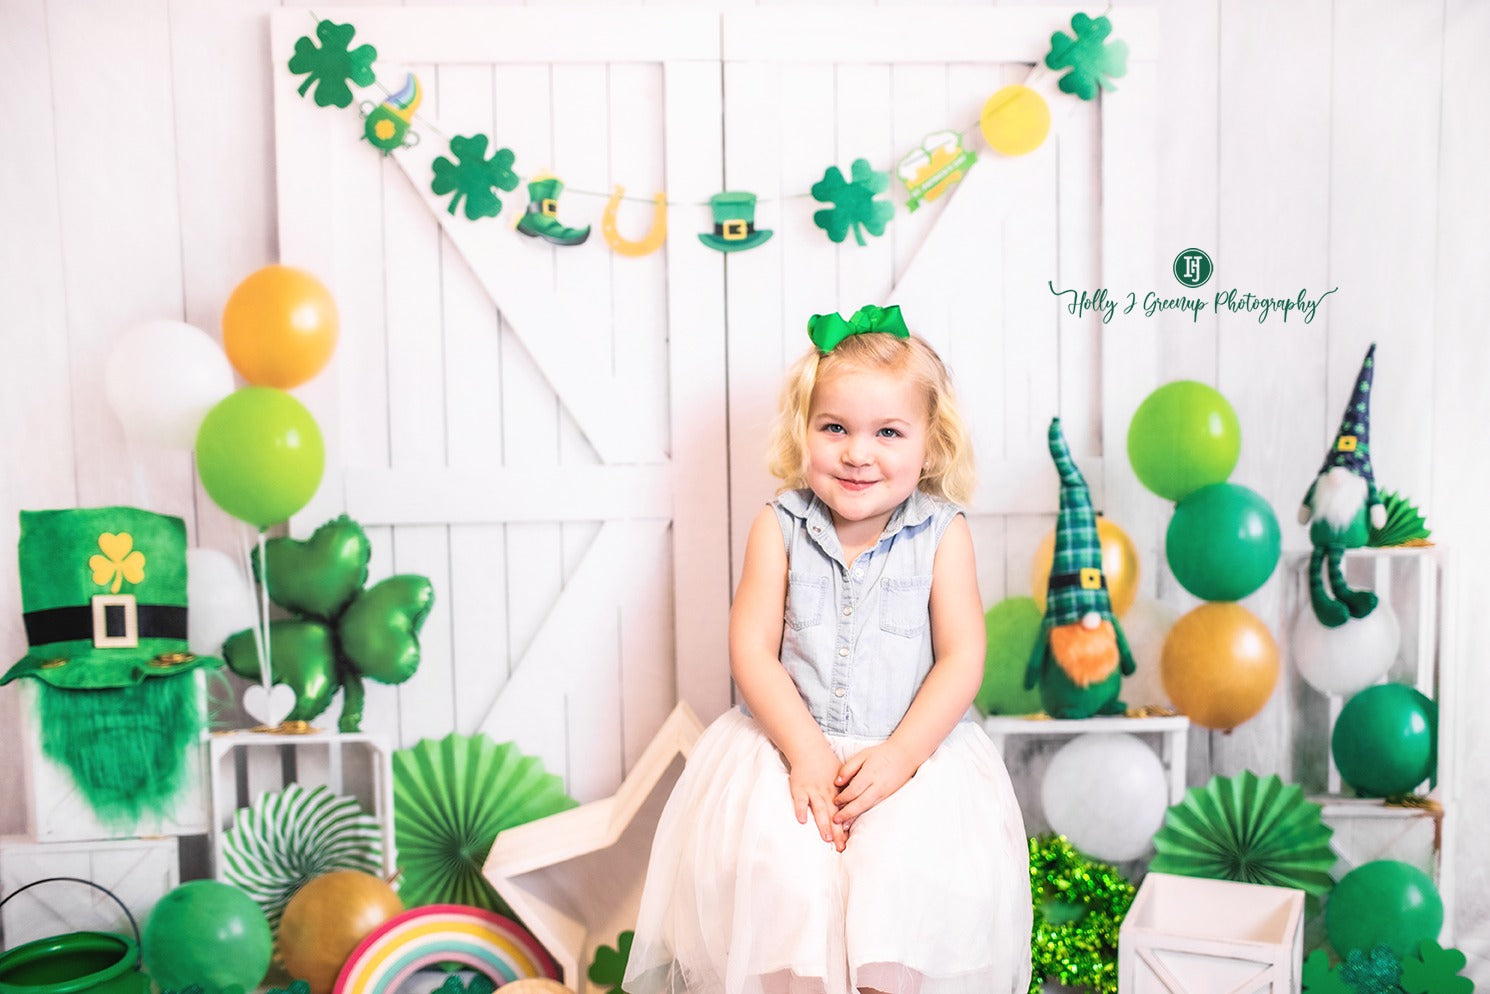 Kate St. Patrick's Day Hintergrund Glückstag Grün von Emetselch